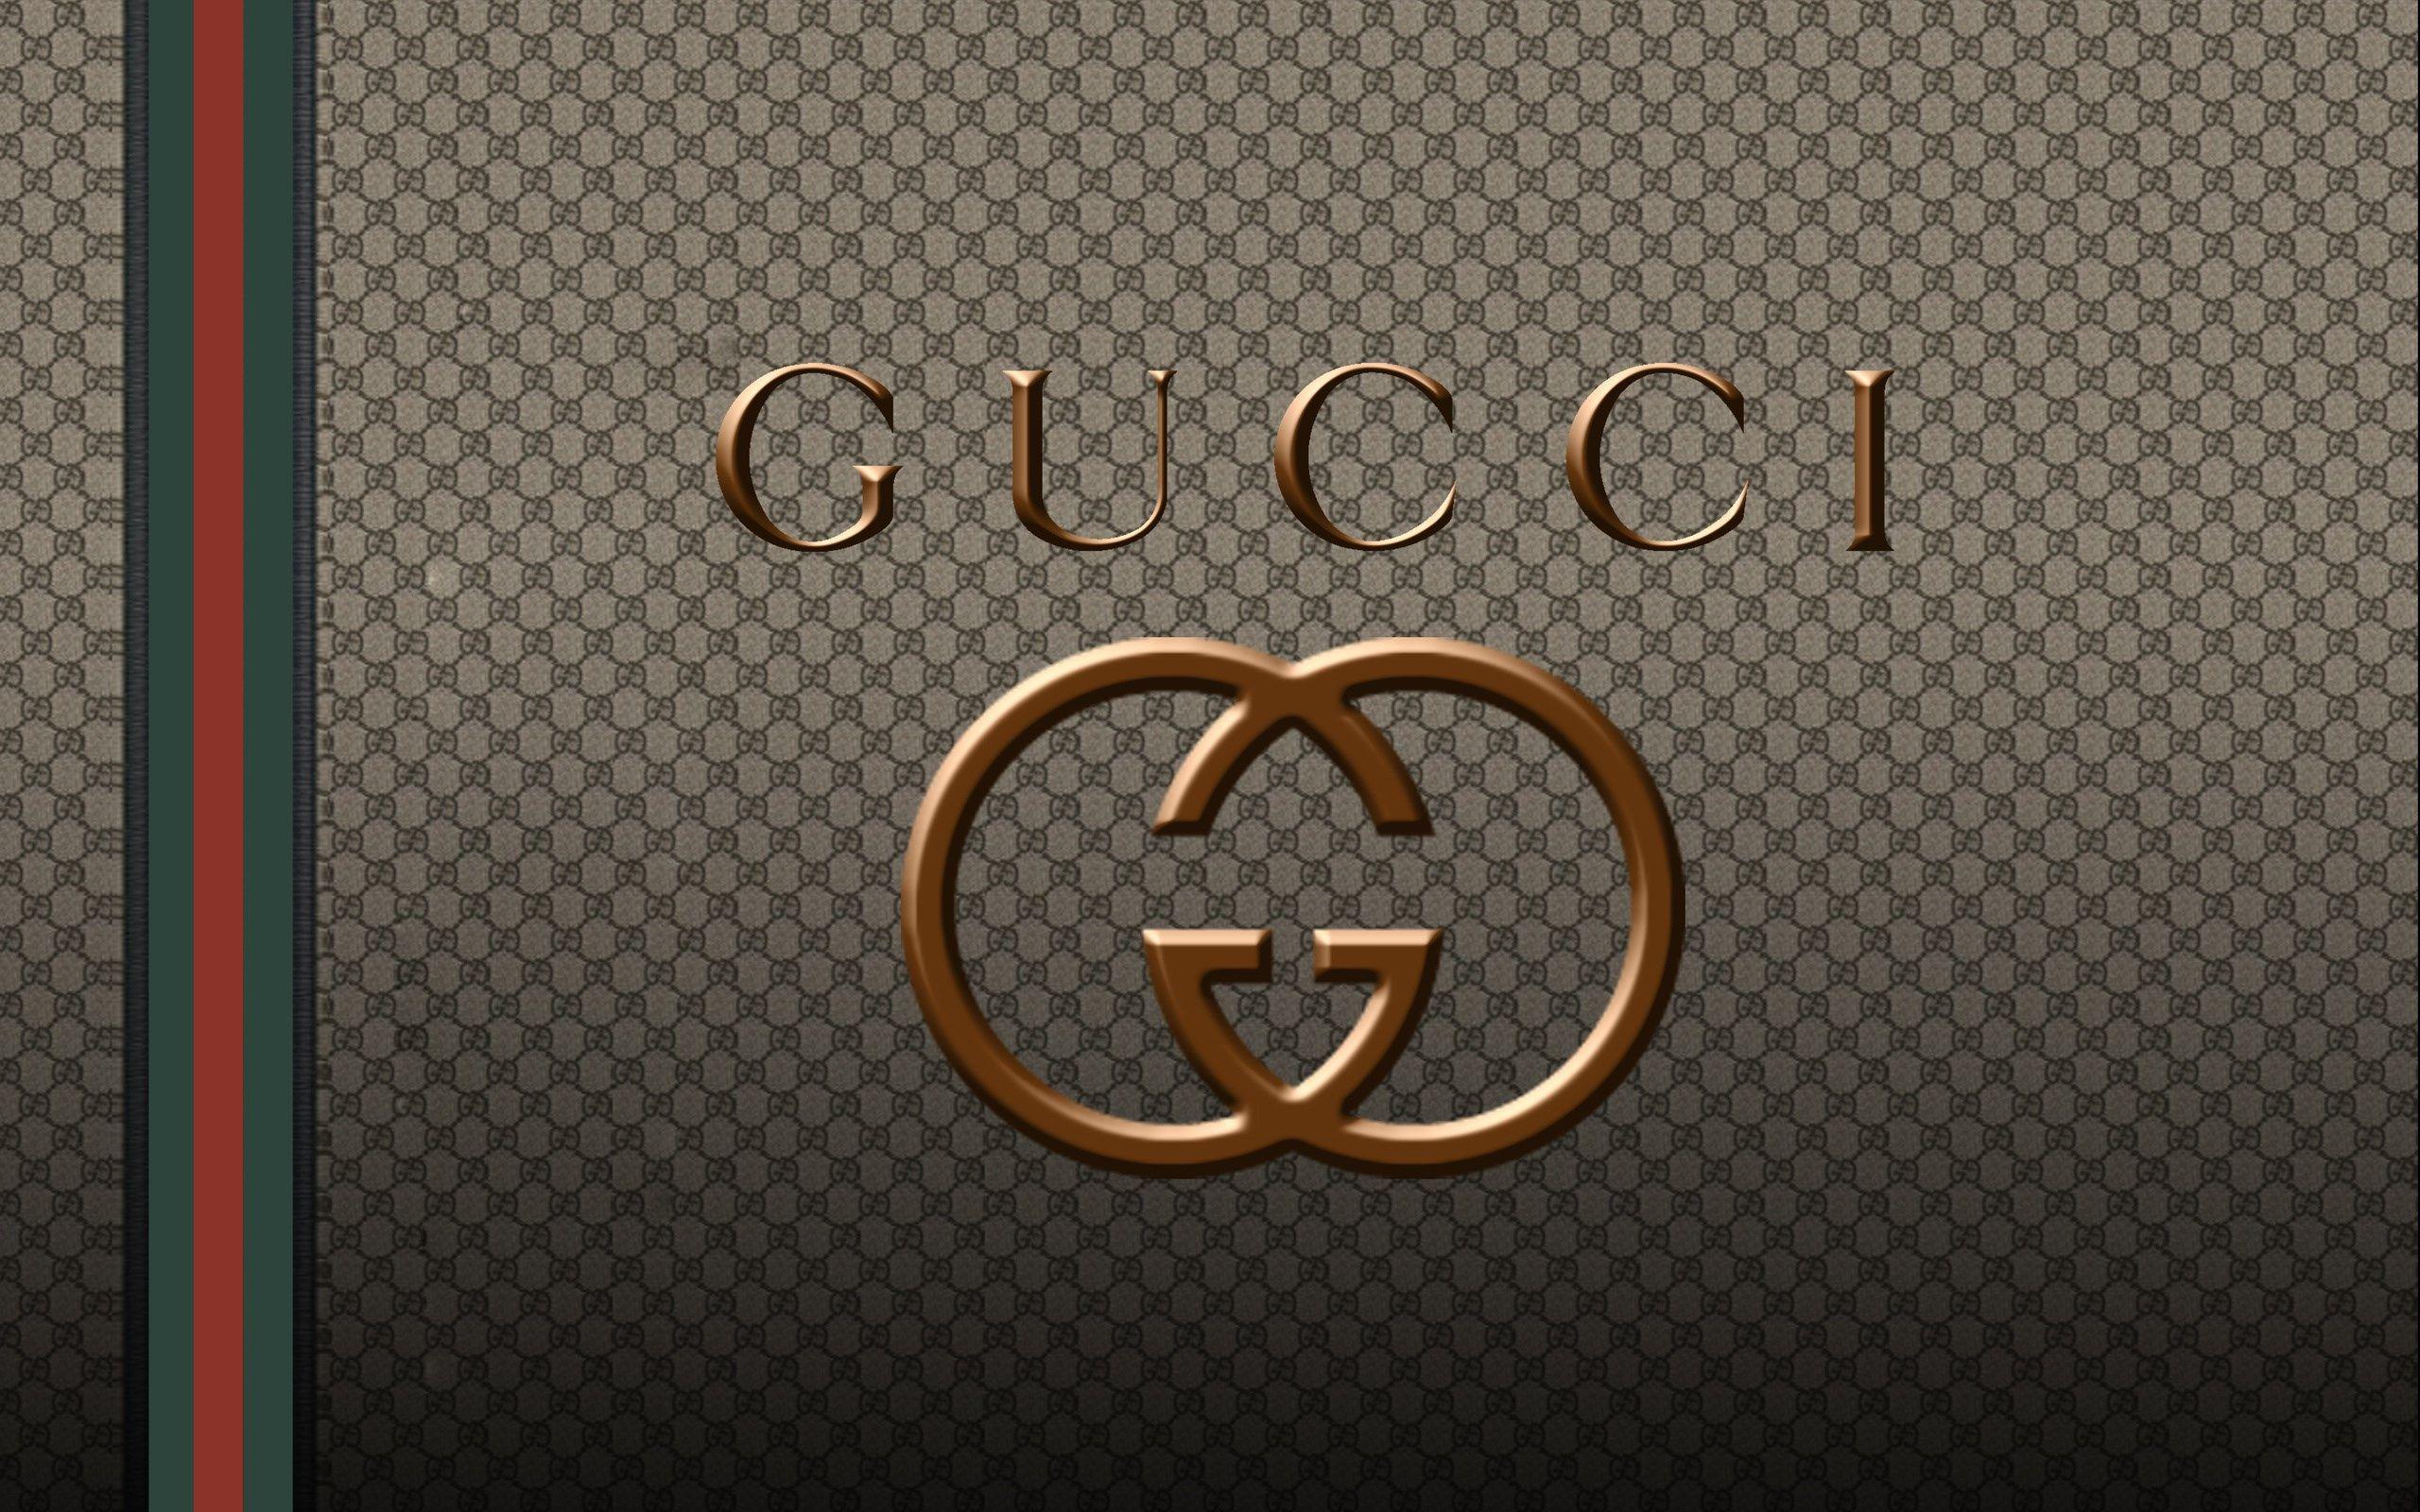 gucci logo wallpaper